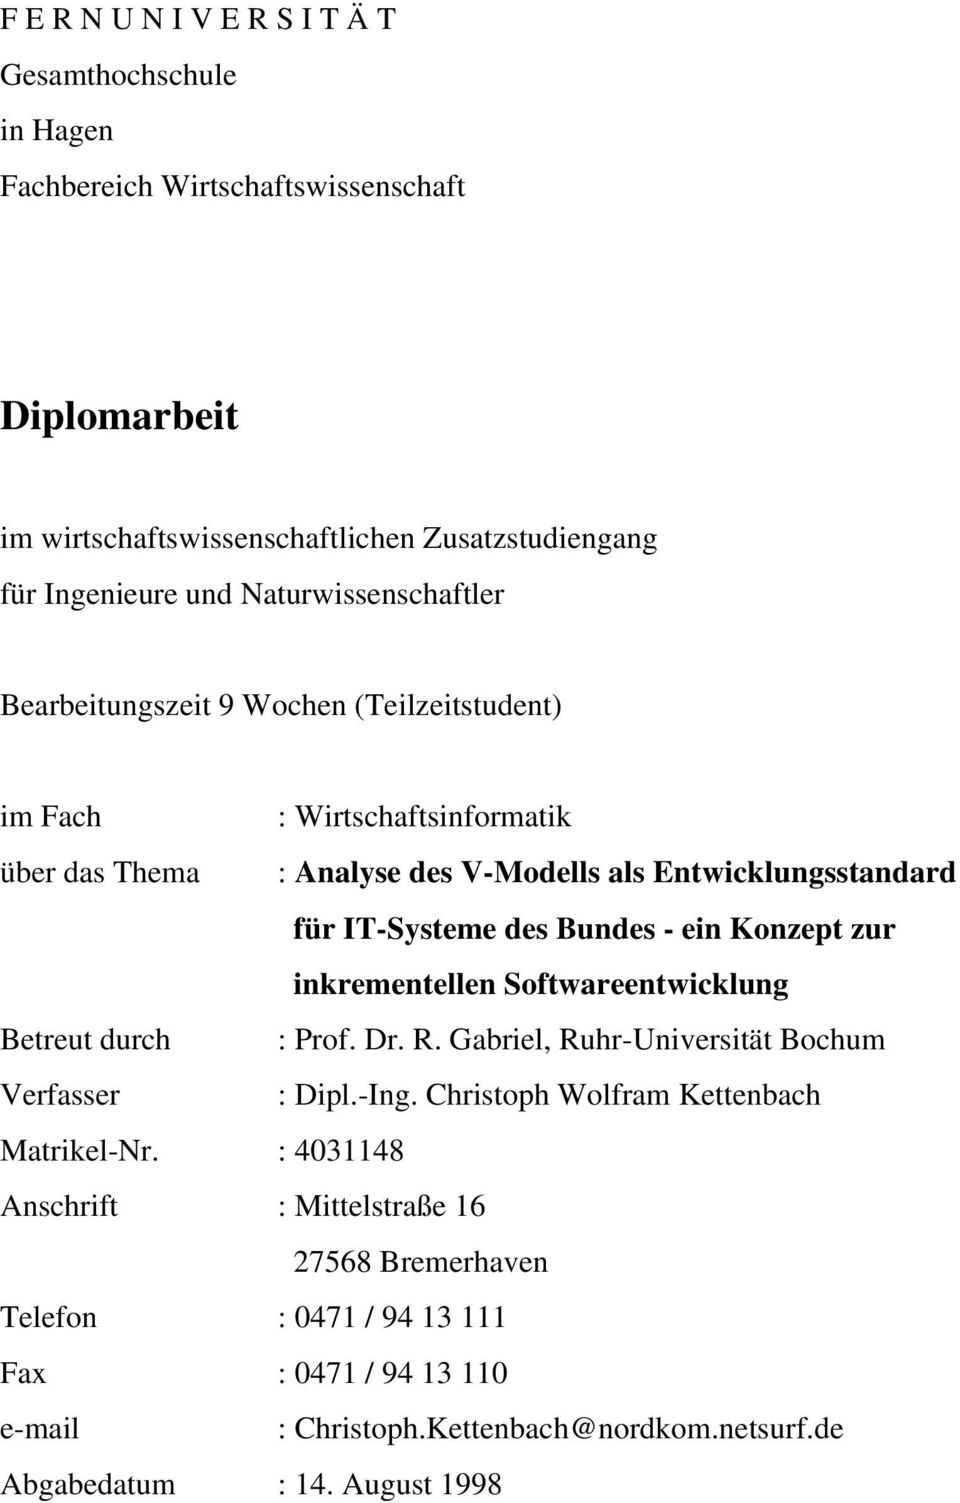 Bundes - ein Konzept zur inkrementellen Softwareentwicklung Betreut durch : Prof. Dr. R. Gabriel, Ruhr-Universität Bochum Verfasser : Dipl.-Ing.